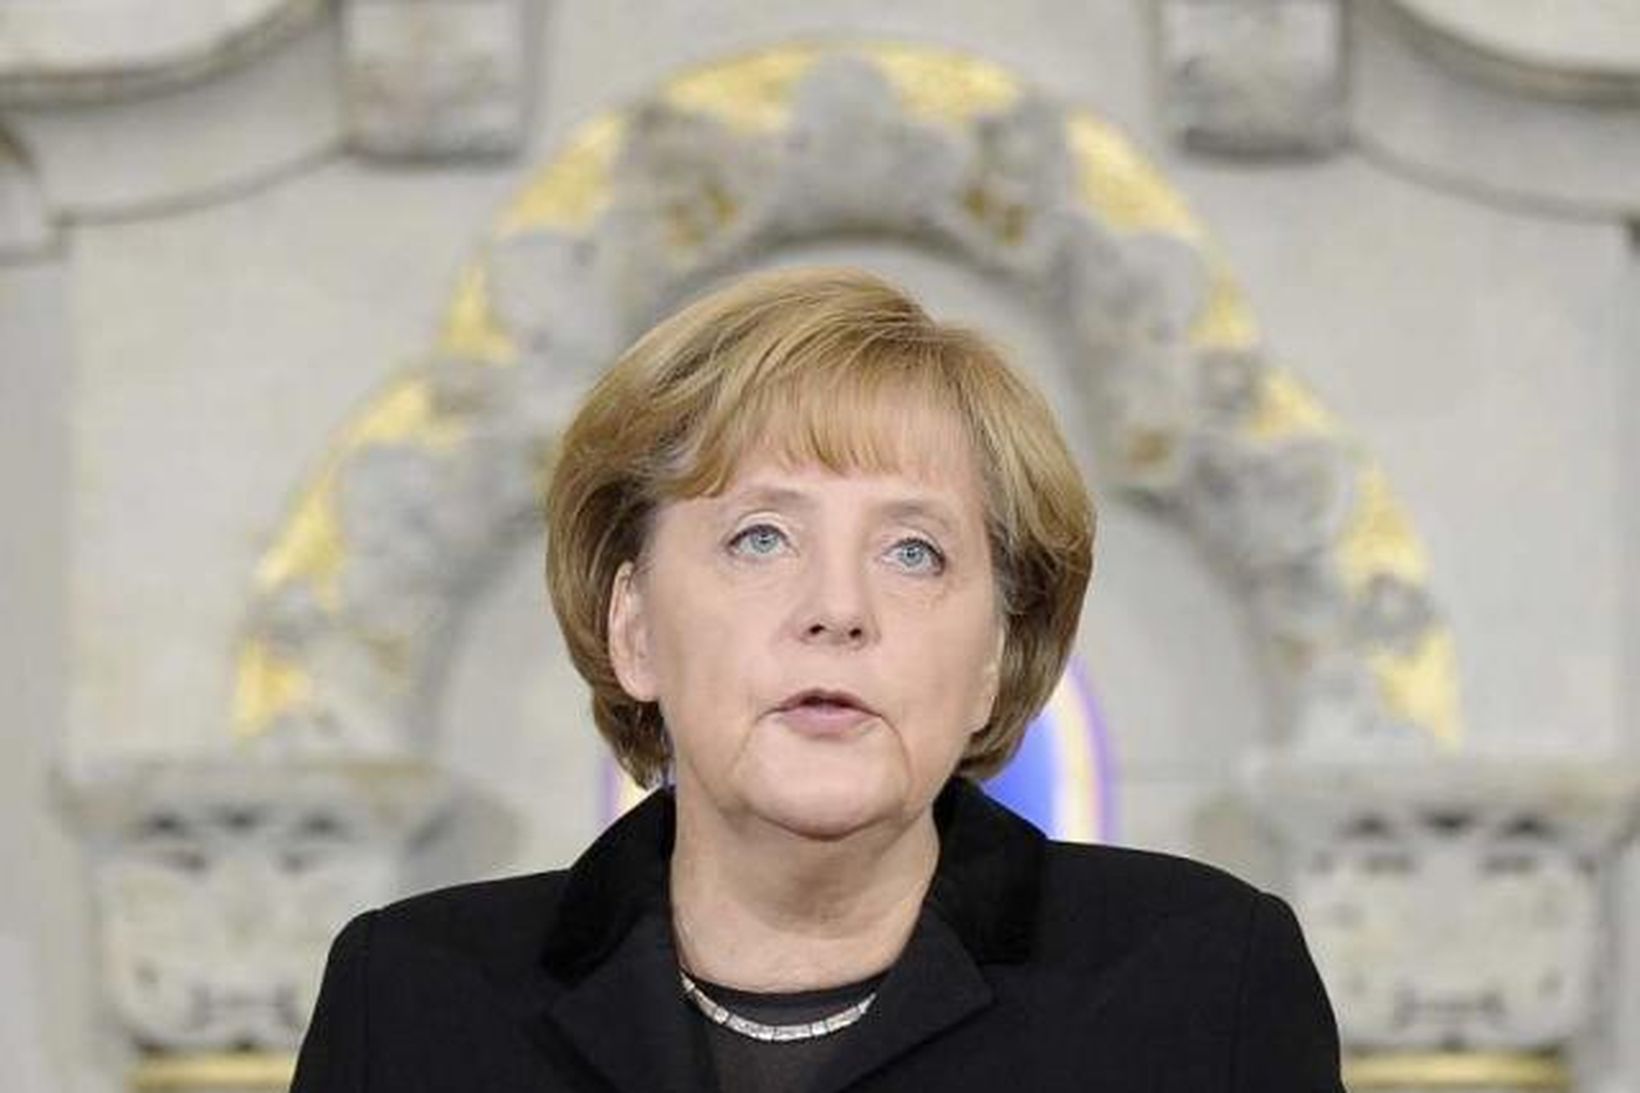 Angela Merkel, kanslari Þýskalands, segir útlitið svart í efnahagsmálum þjóðarinnar.